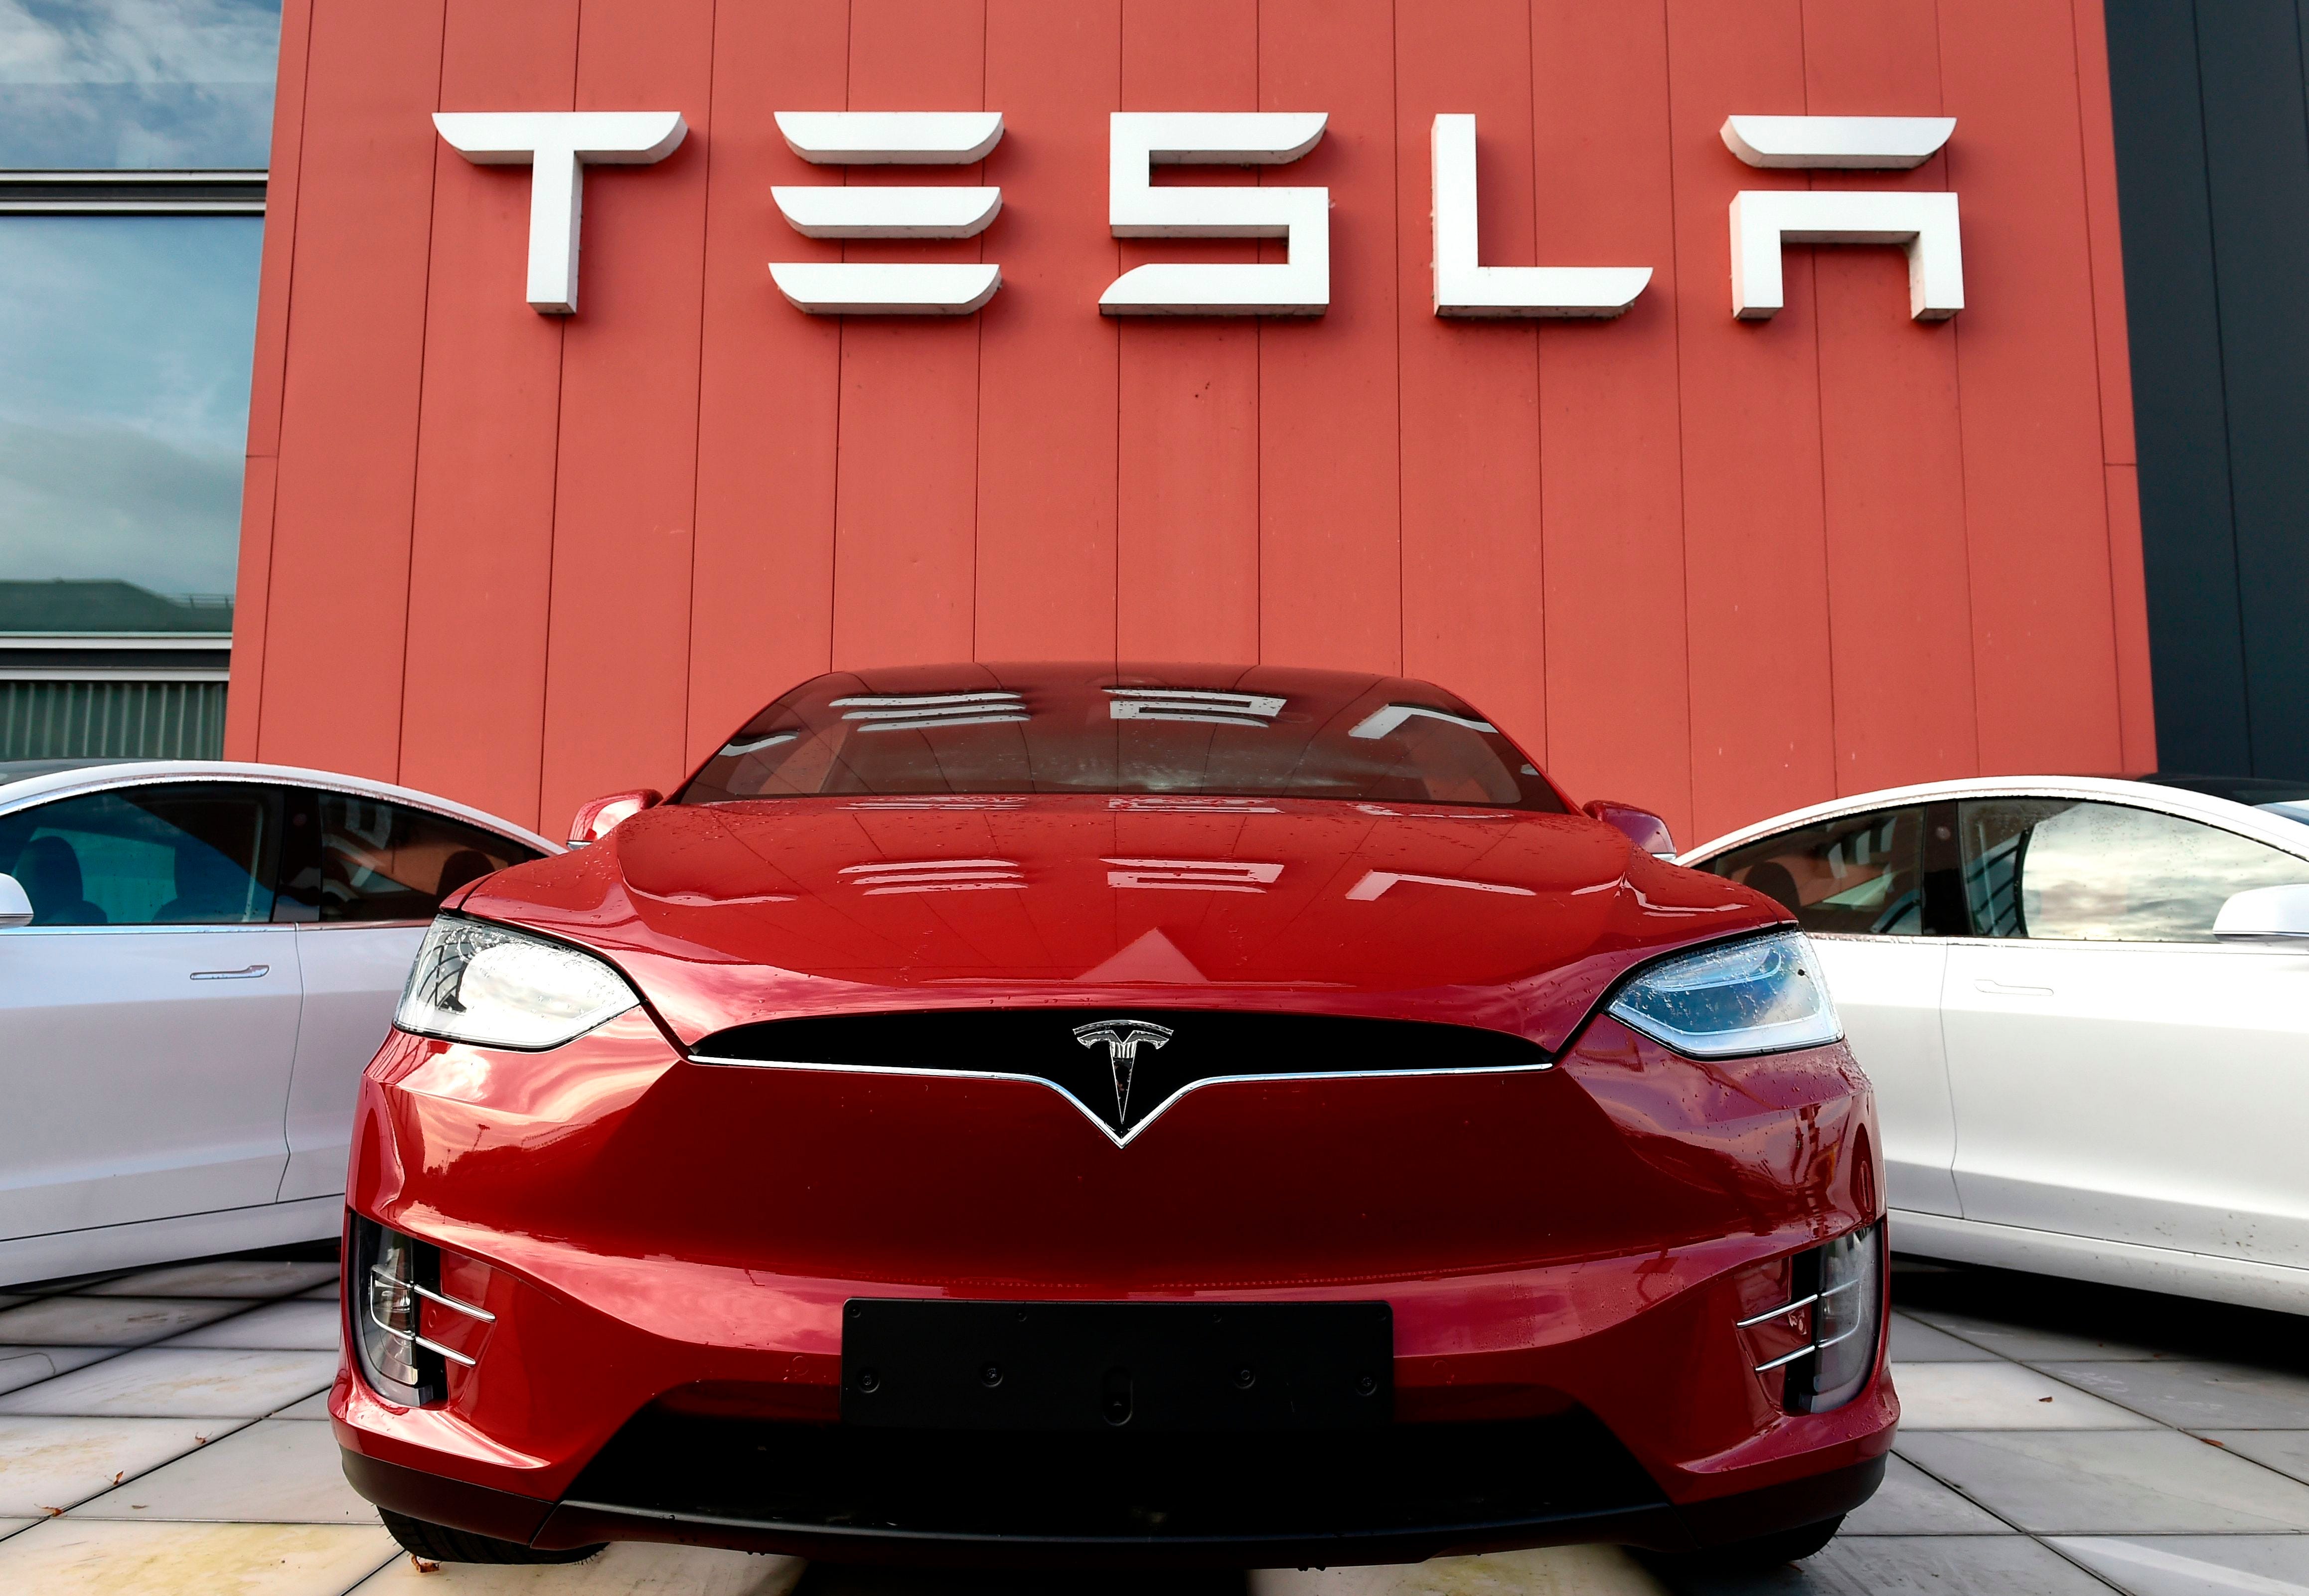 Das Logo markiert den Showroom und Servicecenter des US-amerikanischen Automobil- und Energiekonzerns Tesla am 23. Oktober 2019 in Amsterdam